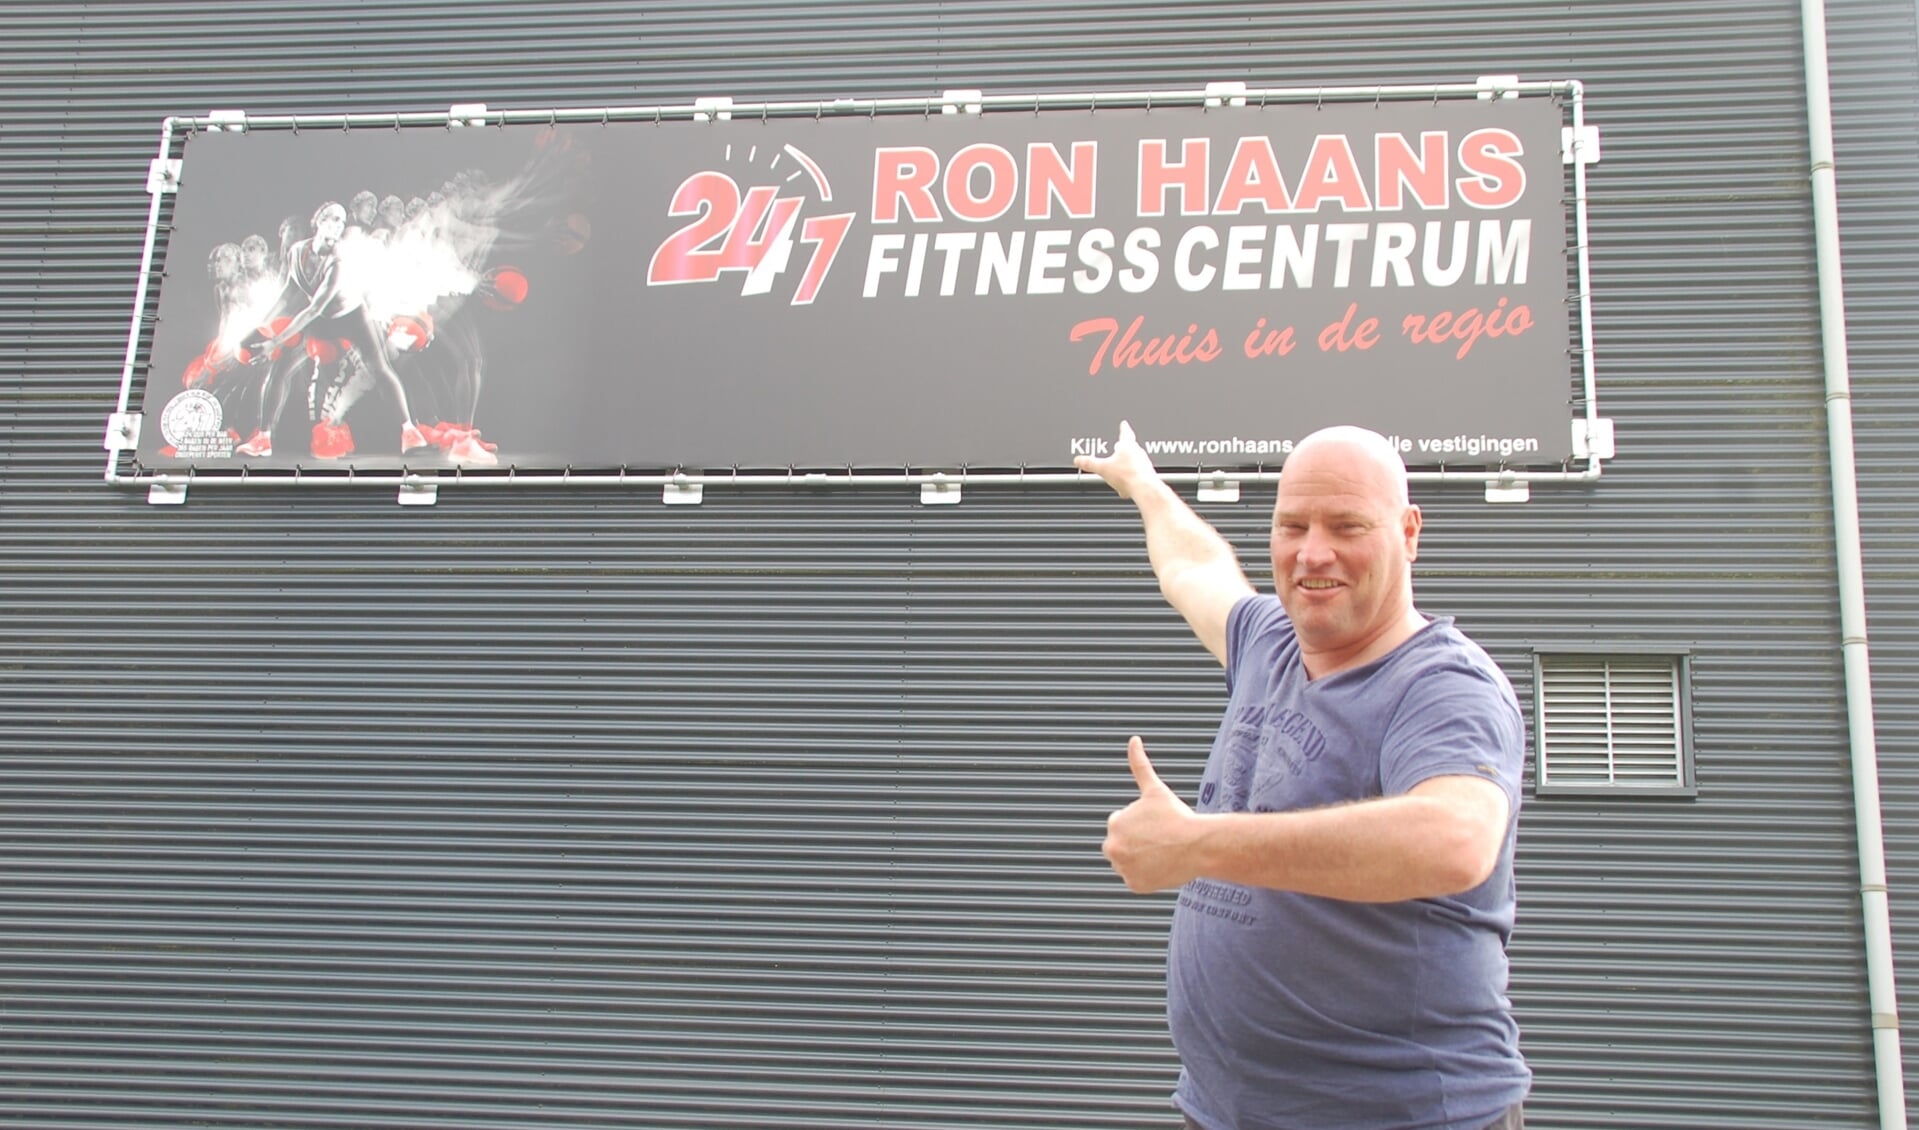 Ron Haans bij het bord van zijn nieuwe sportschool. 